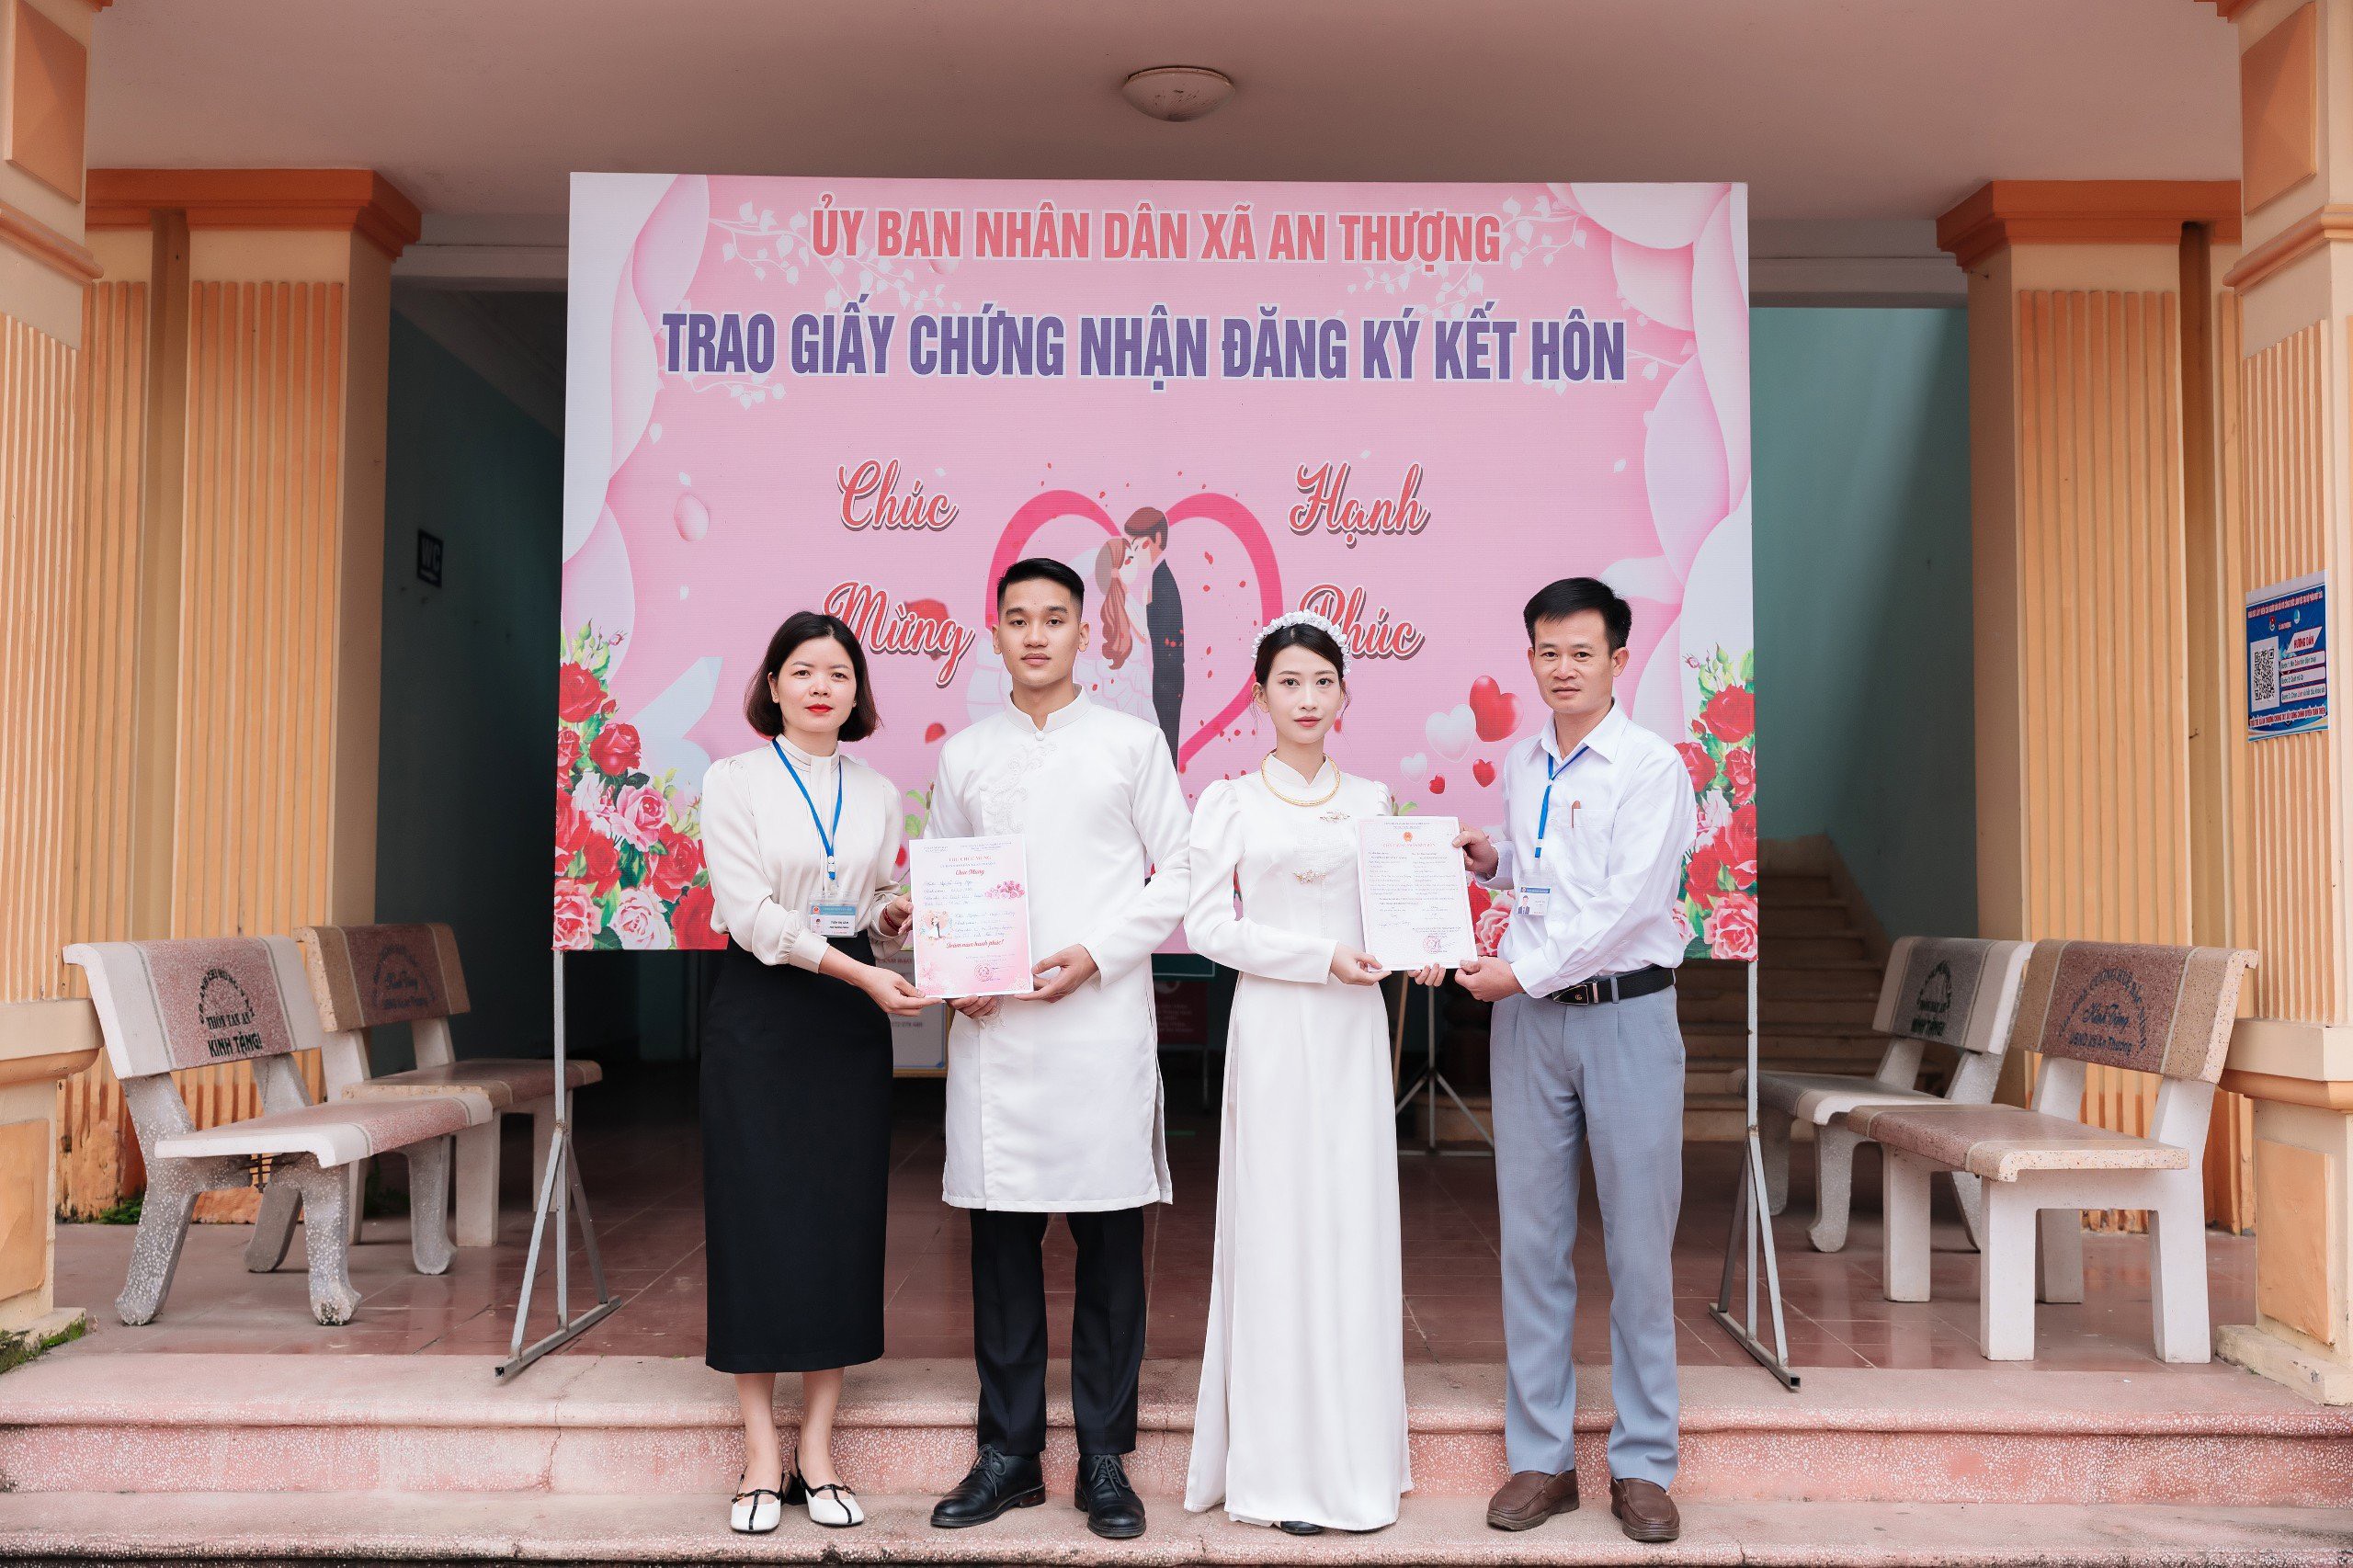 Ủy ban nhân dân xã An Thượng tổ chức trao giấy chứng nhận kết hôn cho công dân